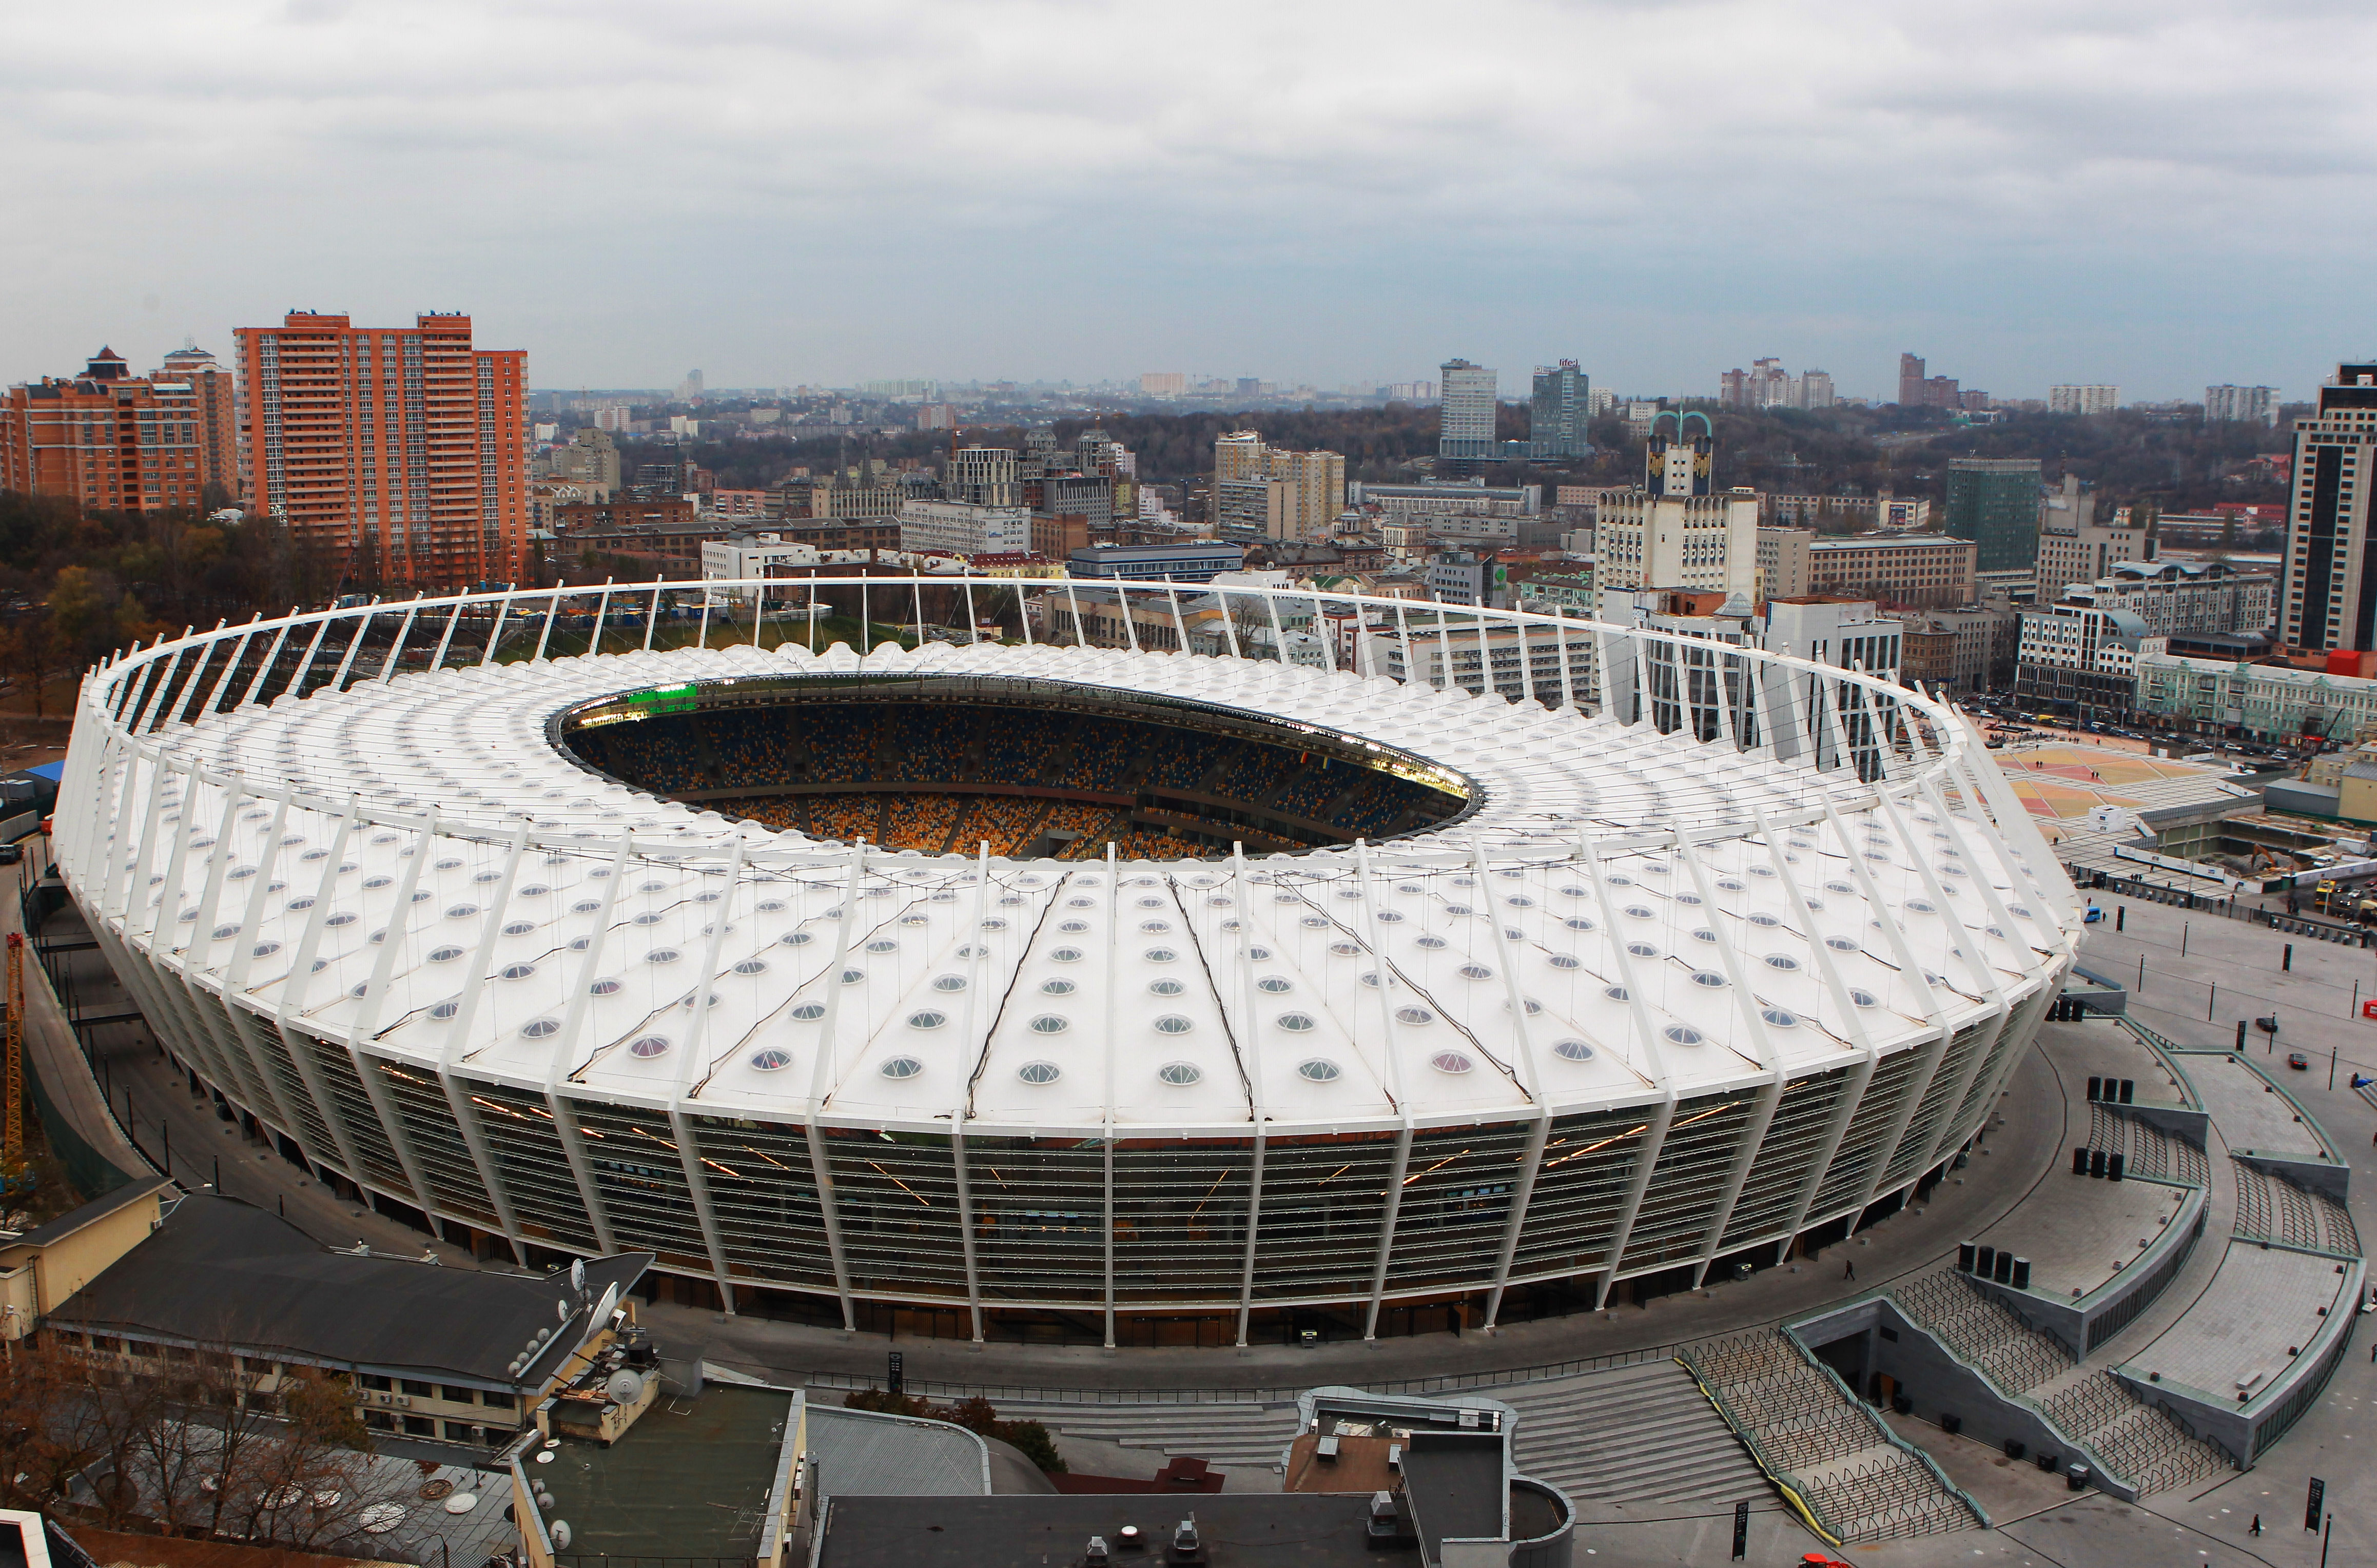 Olympiastadion, Kiev. Kapacitet: 60 000. Invigdes: 1923, renoverad och återinvigd oktober 2011. Matcher: 5.